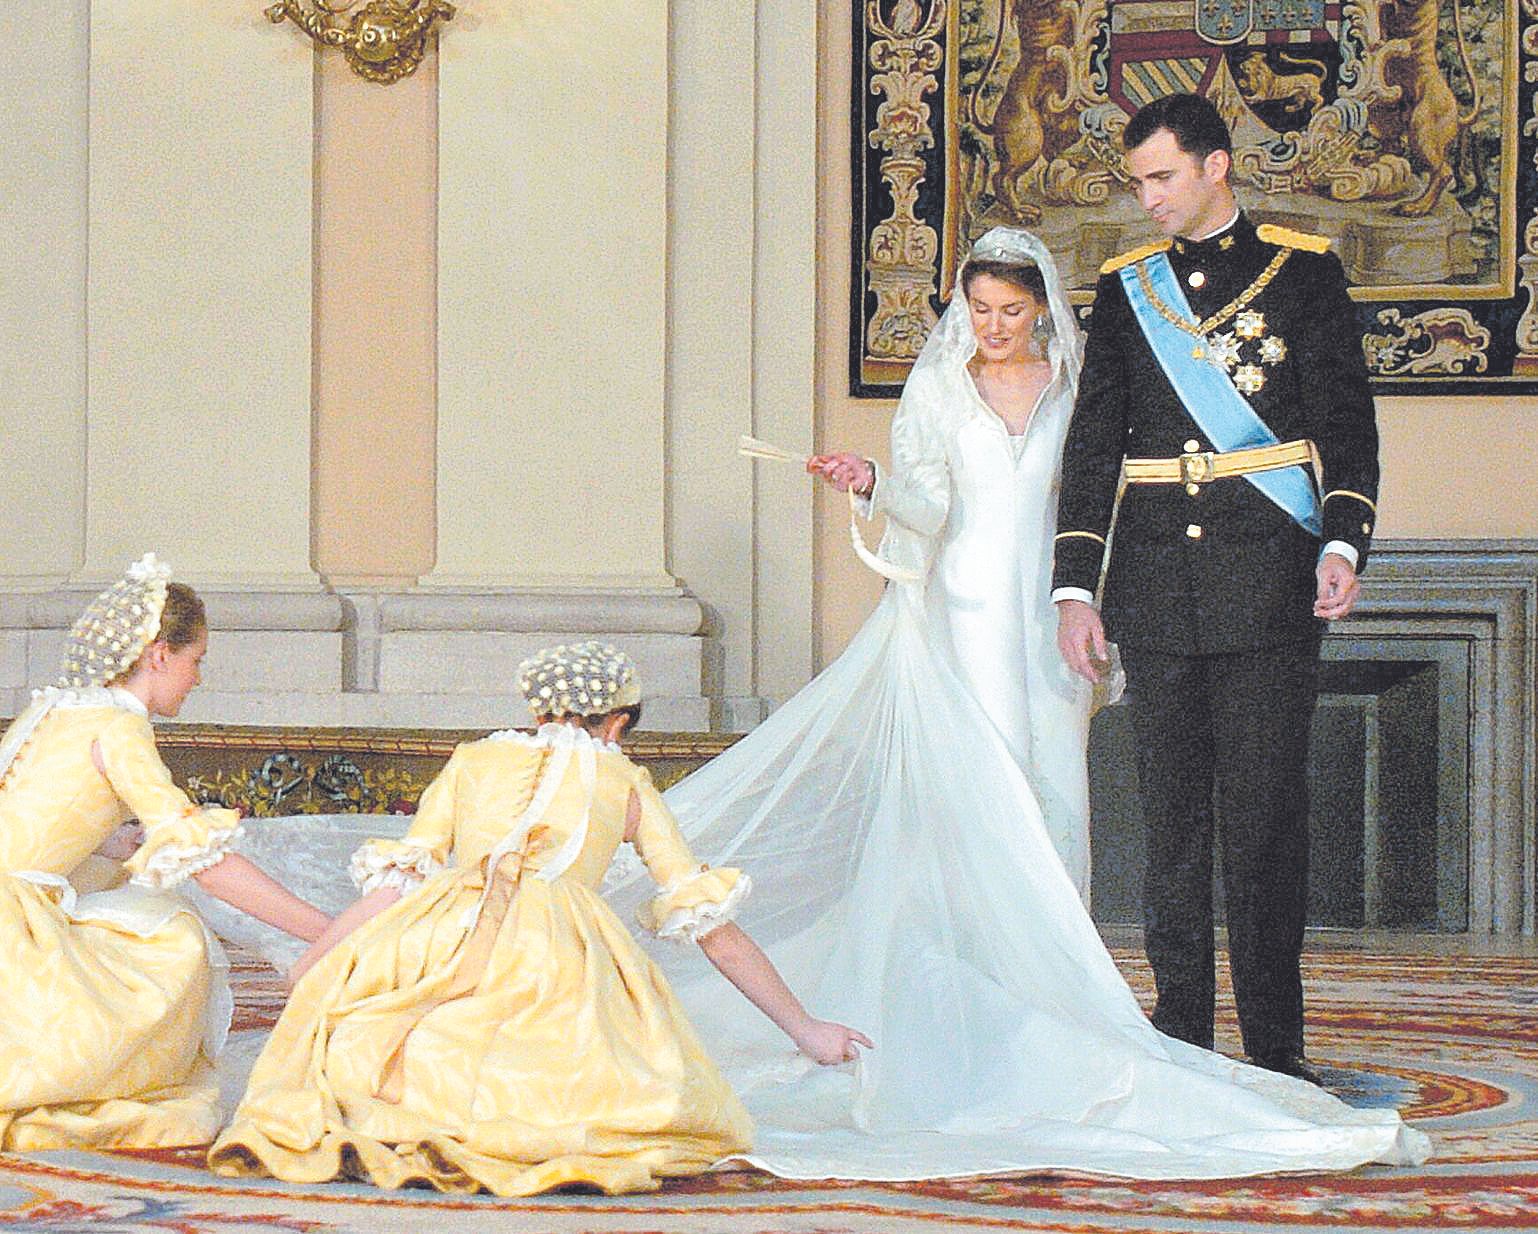 En imágenes | Los invitados asturianos recuerdan la boda real en su vigésimo aniversario